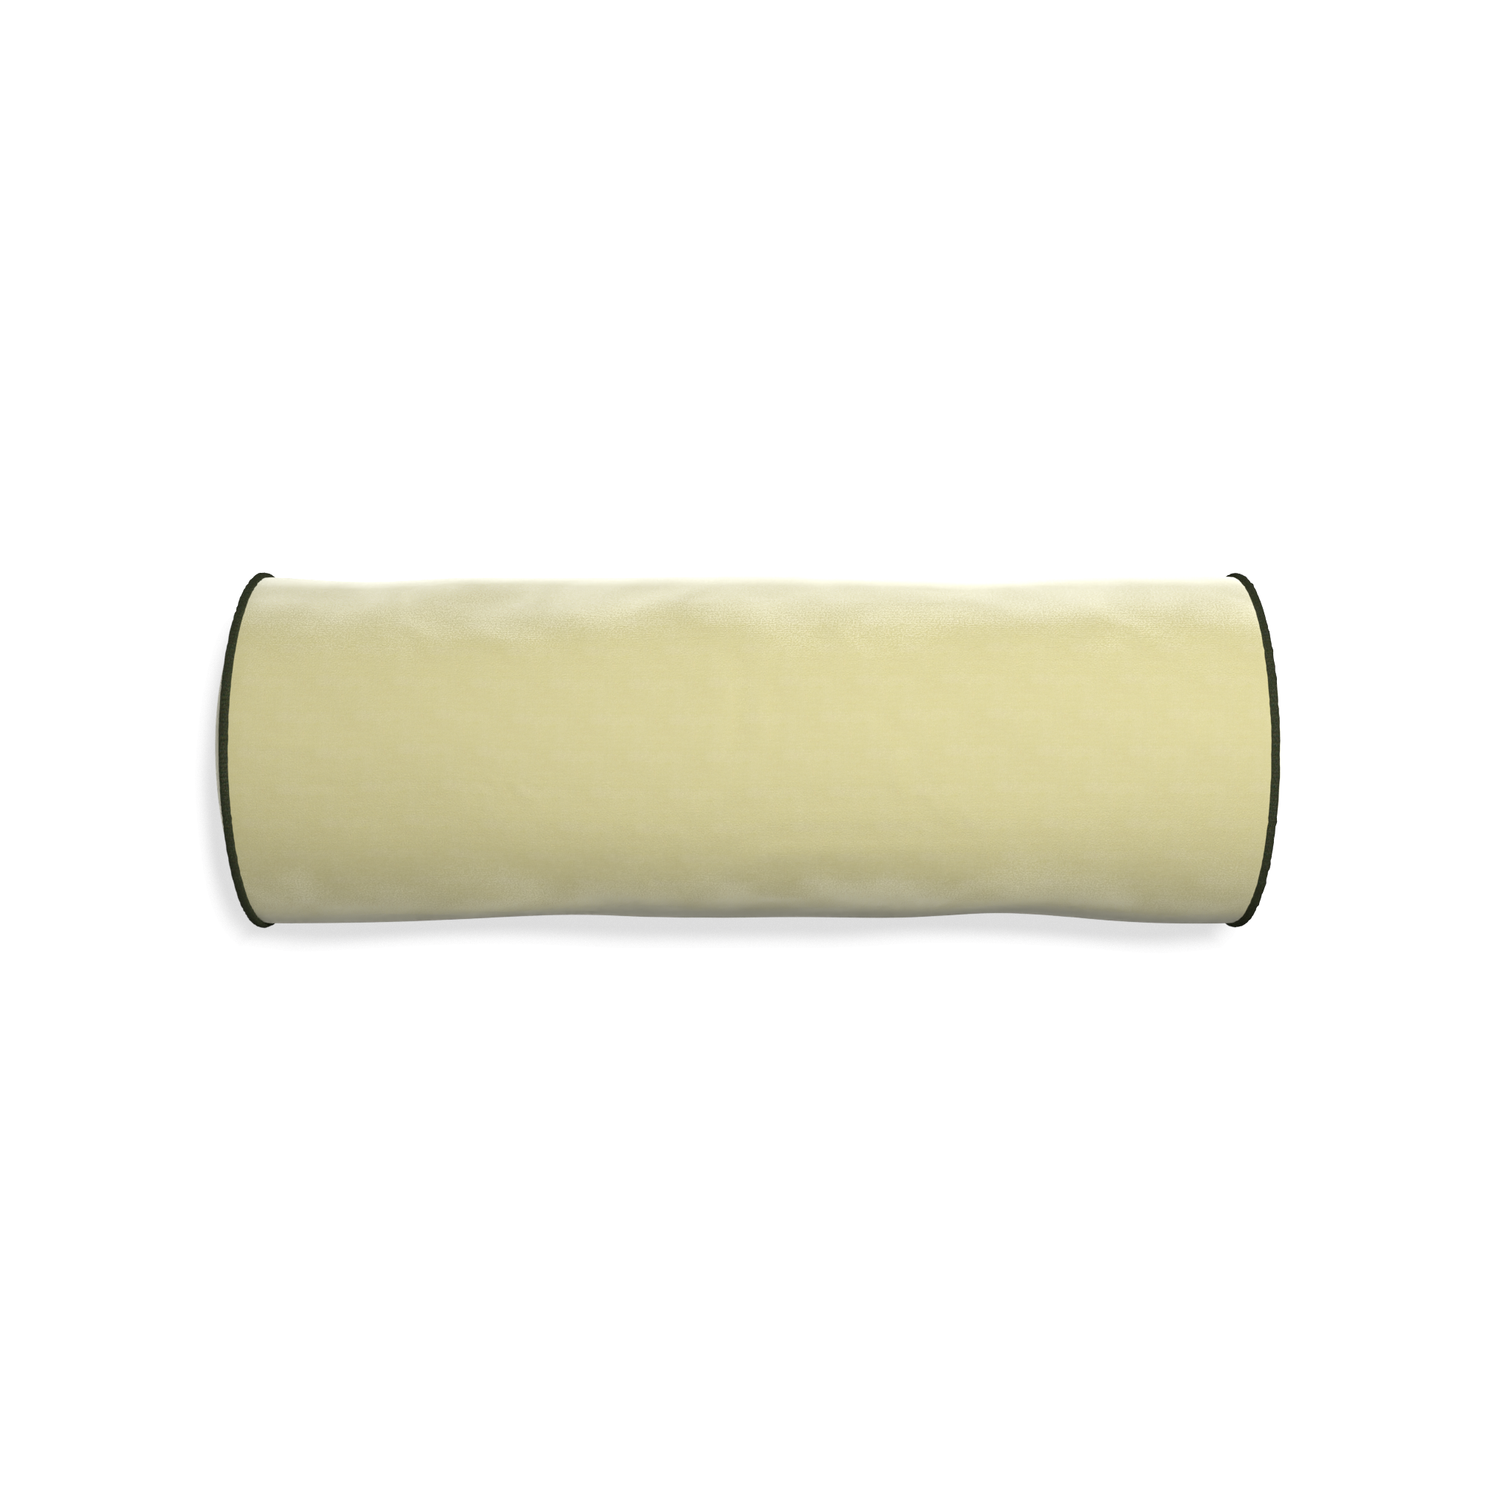 Bolster pear velvet custom pillow with f piping on white background